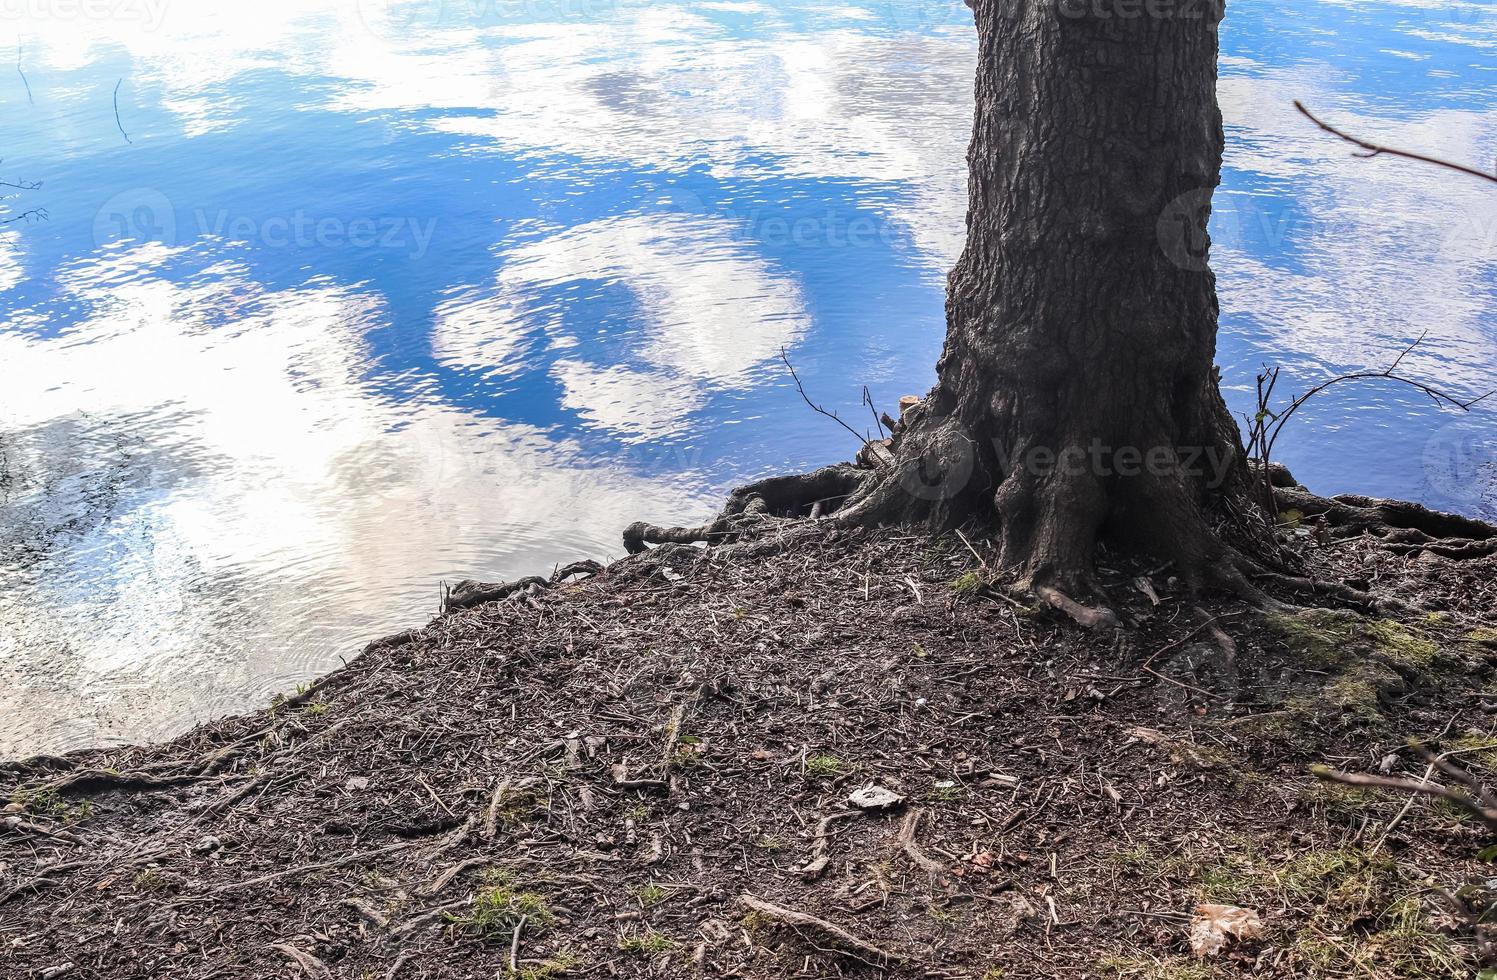 bela paisagem em um lago com uma superfície de água reflexiva foto